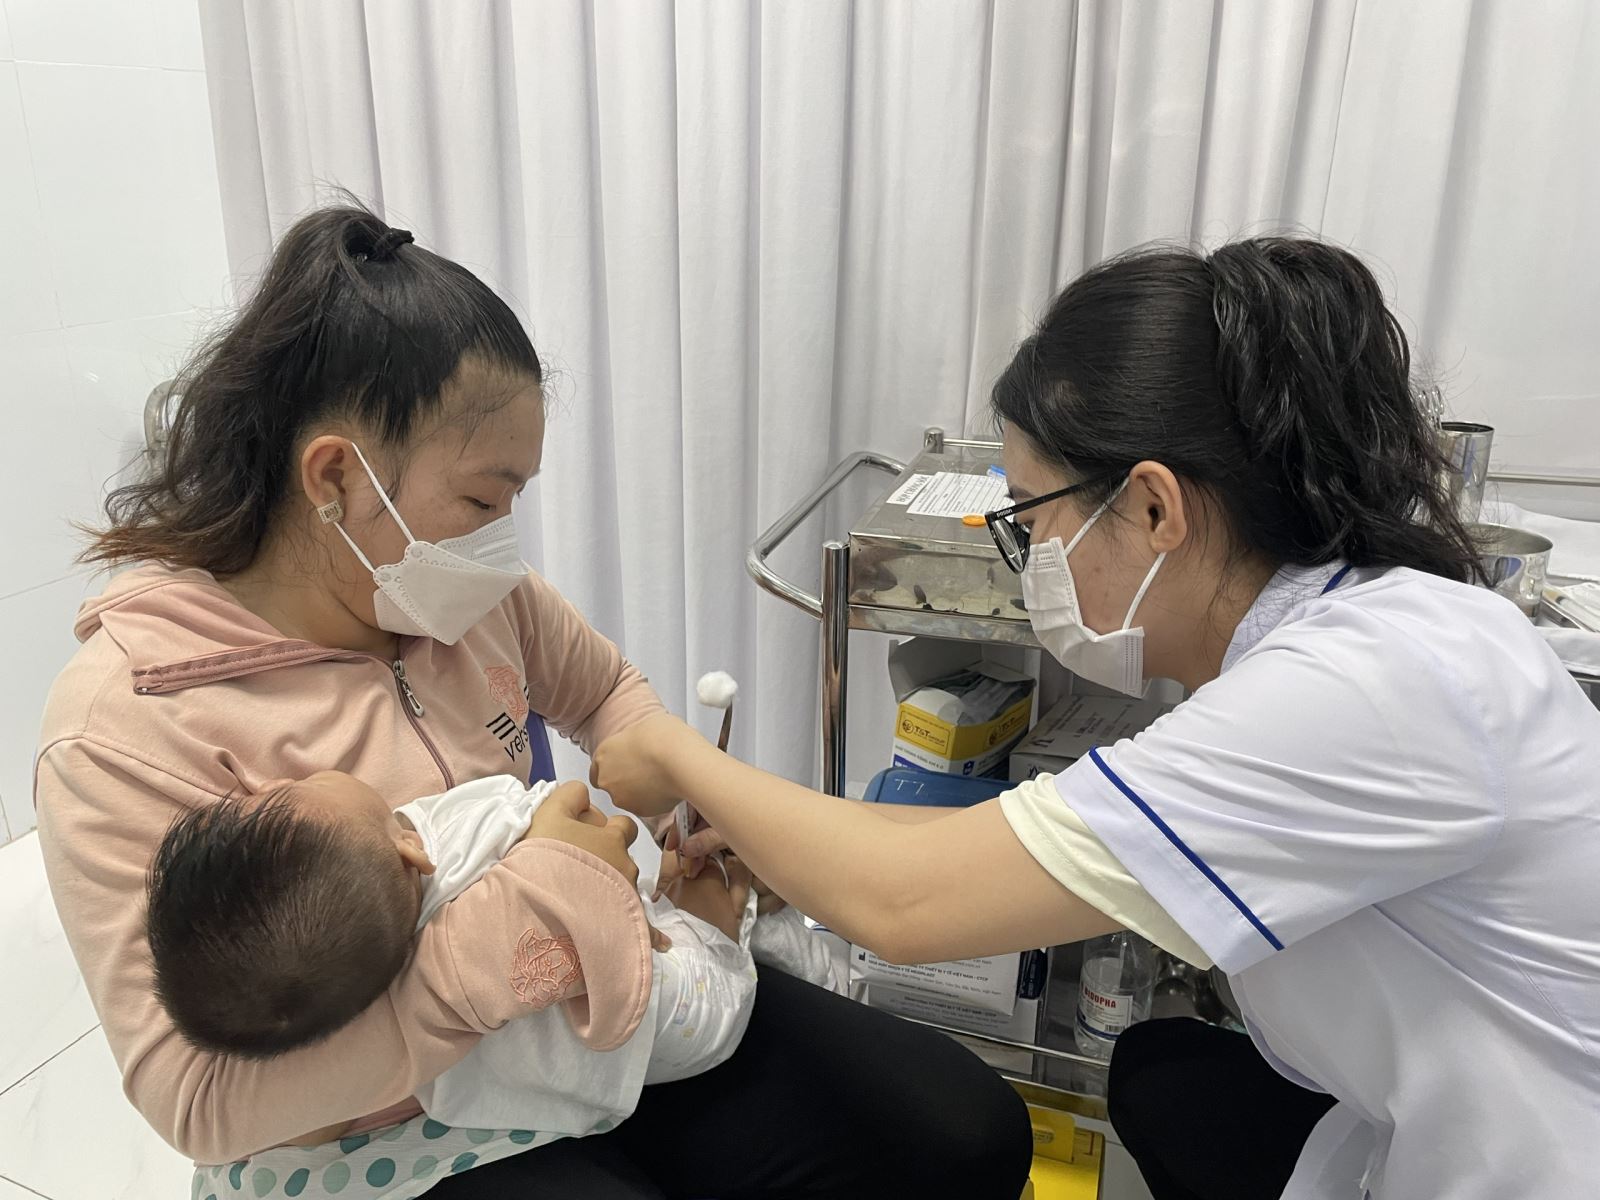 TP Hồ Chí Minh: Trên 30.000 trẻ dưới 2 tuổi chưa được tiêm chủng đầy đủ, nguy cơ xuất hiện nhiều dịch bệnh - Ảnh 1.